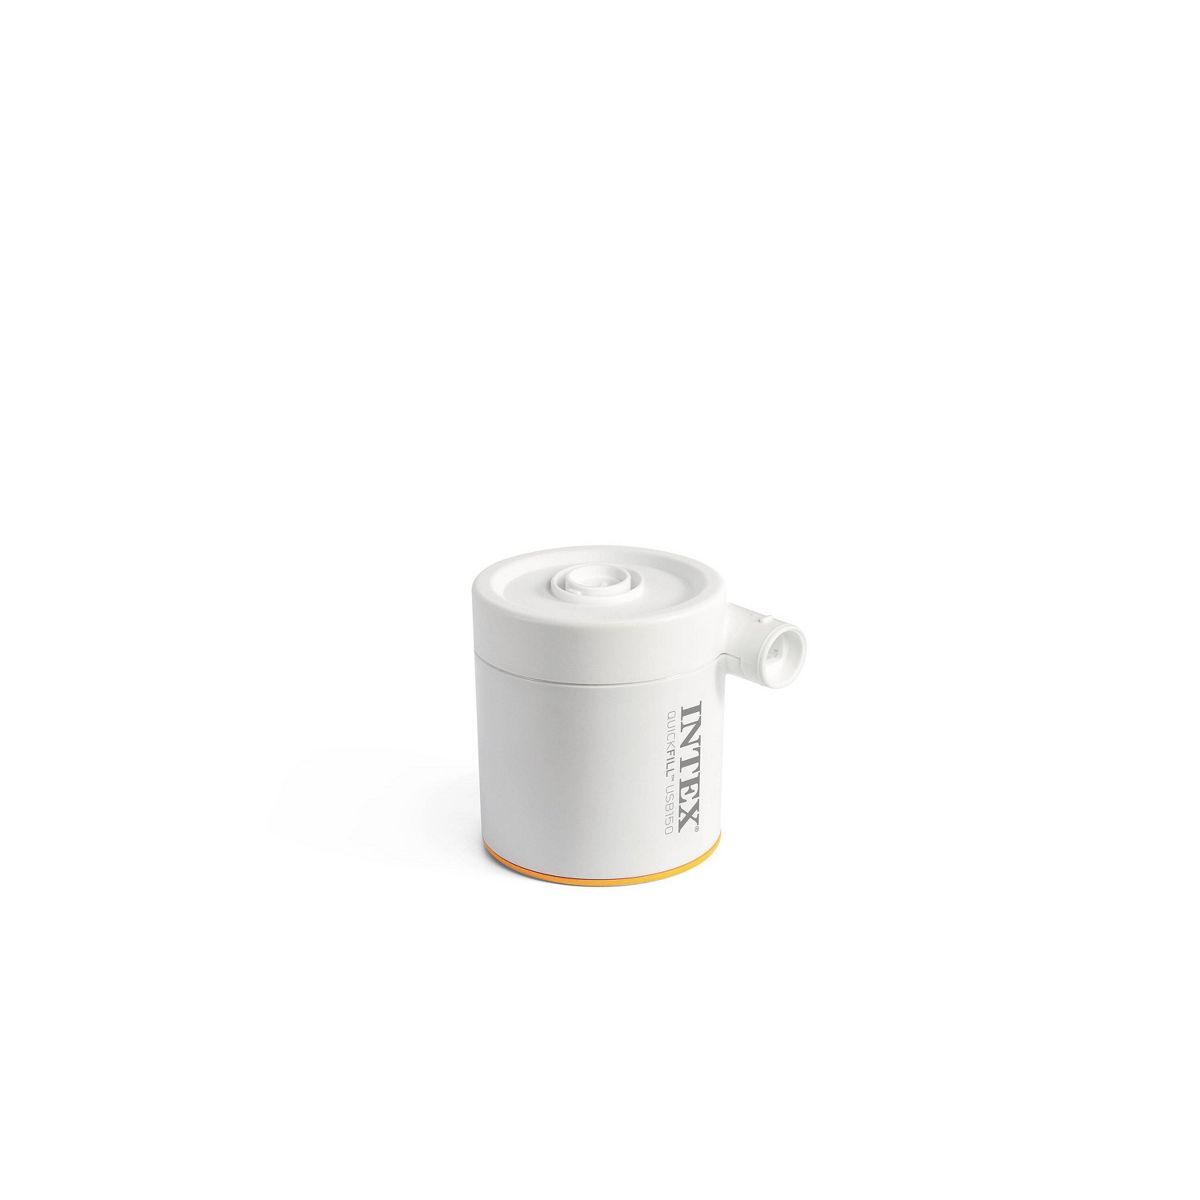 Intex Quick Fill Cylinder Mini USB Air Pump | Target